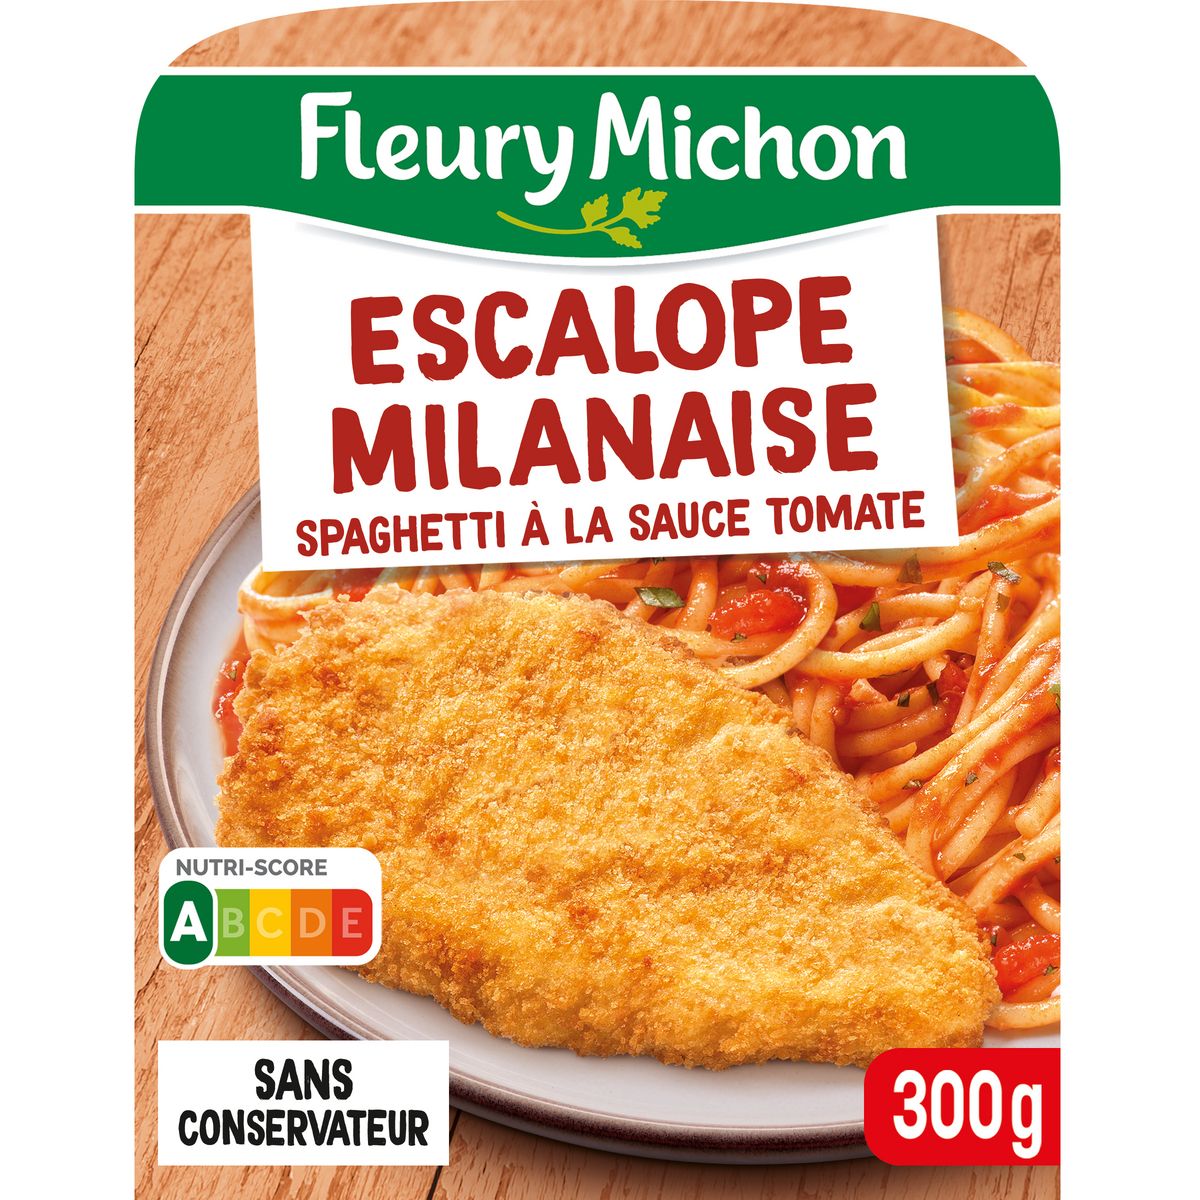 FLEURY MICHON Escalope milanaise et spaghetti tomate 1 portion 300g